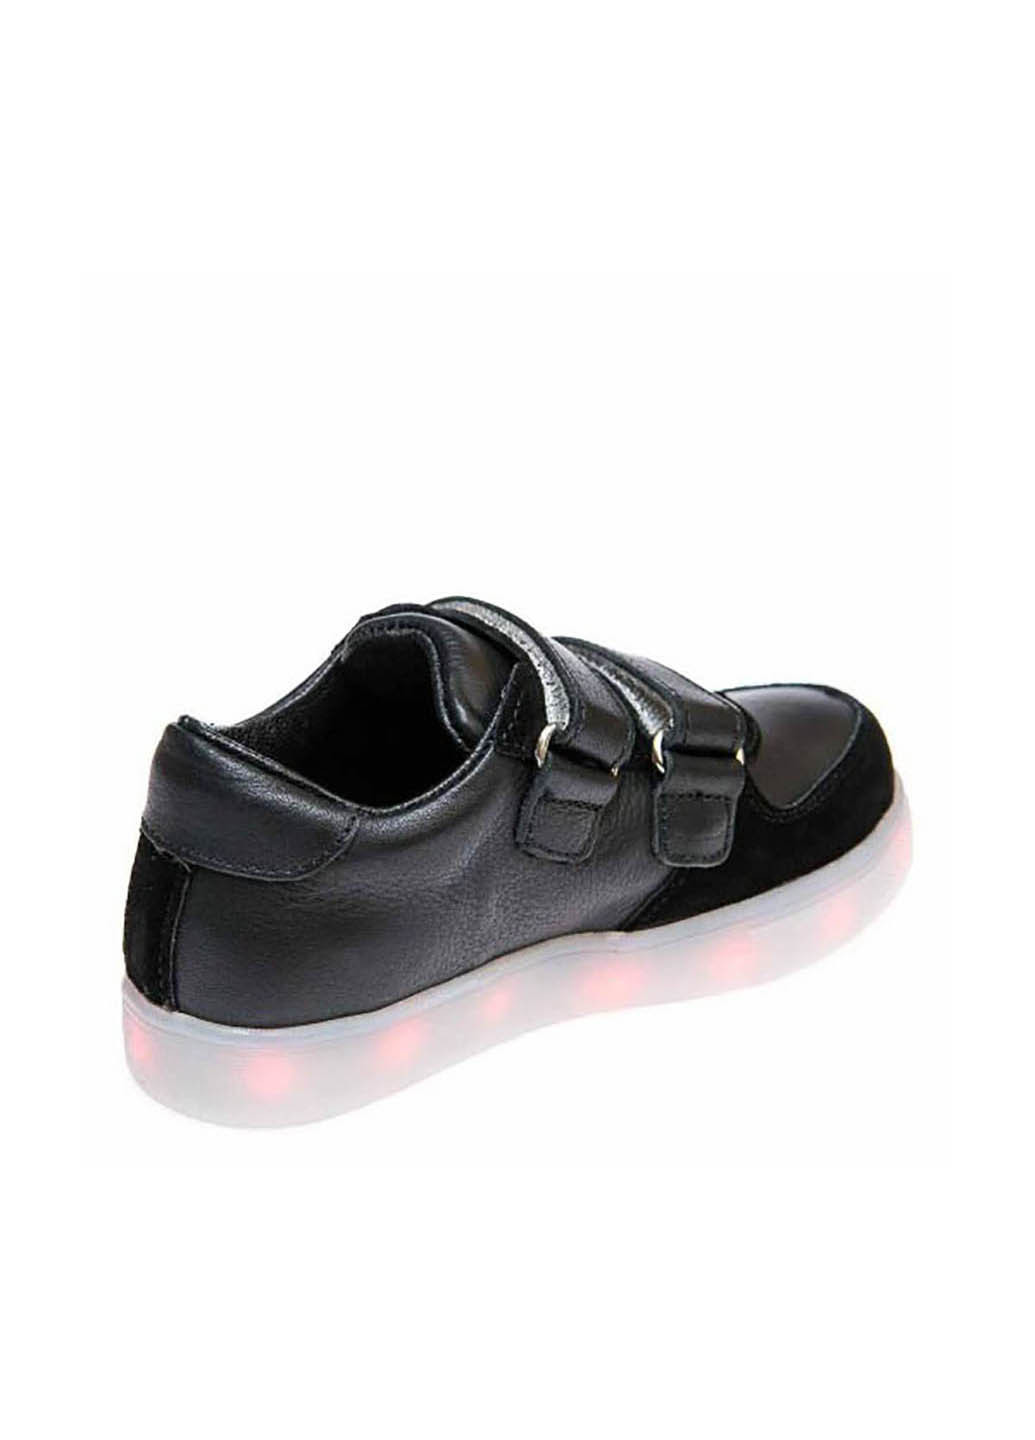 Черные демисезонные кроссовки OCAK 104(01)чёрная кожа/замш (37-40)40